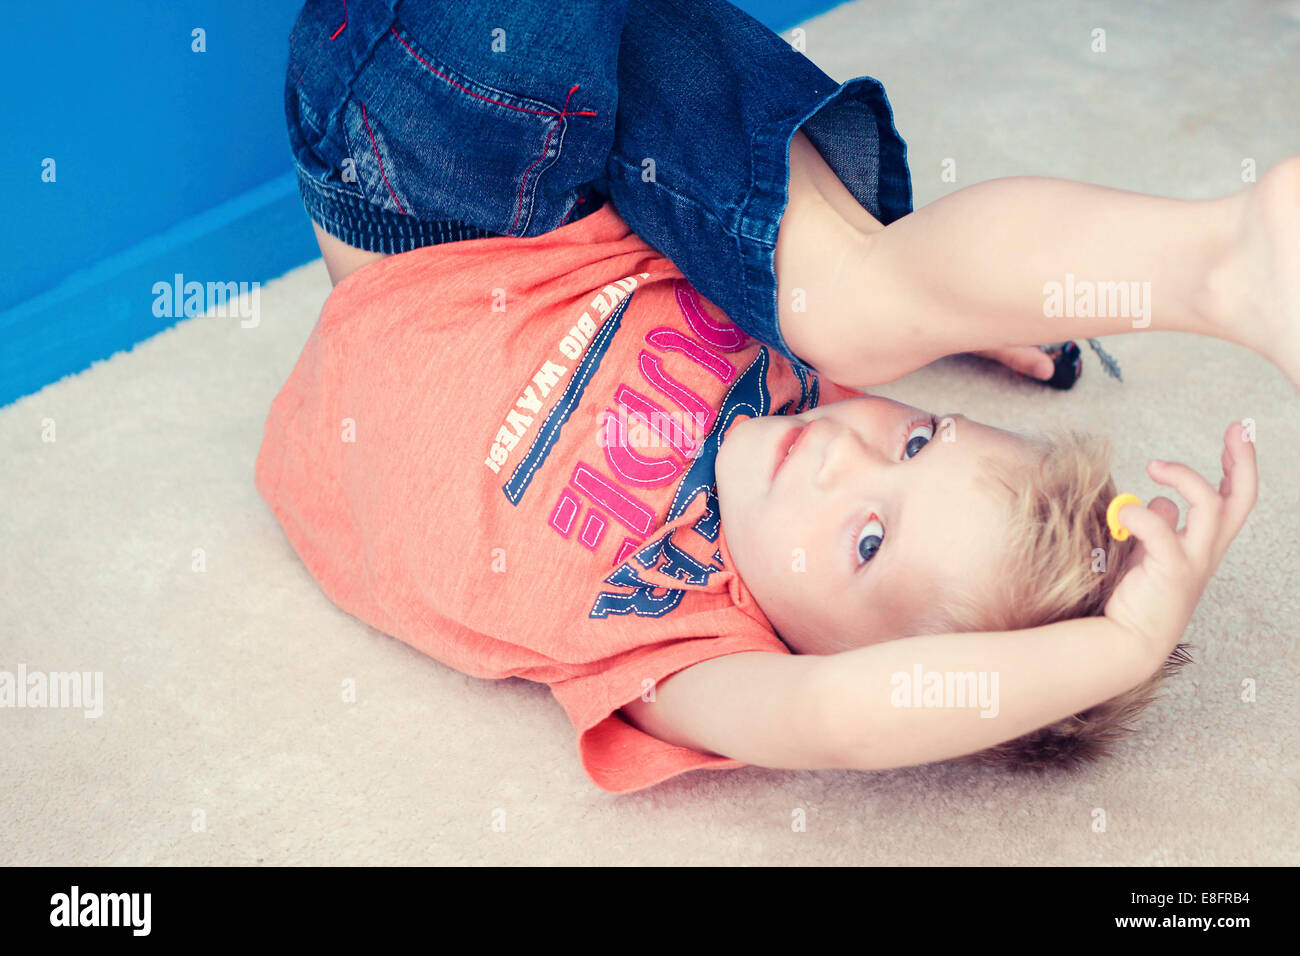 Boy am Boden auf dem Kopf stehend mit Spielzeug spielen Stockfoto